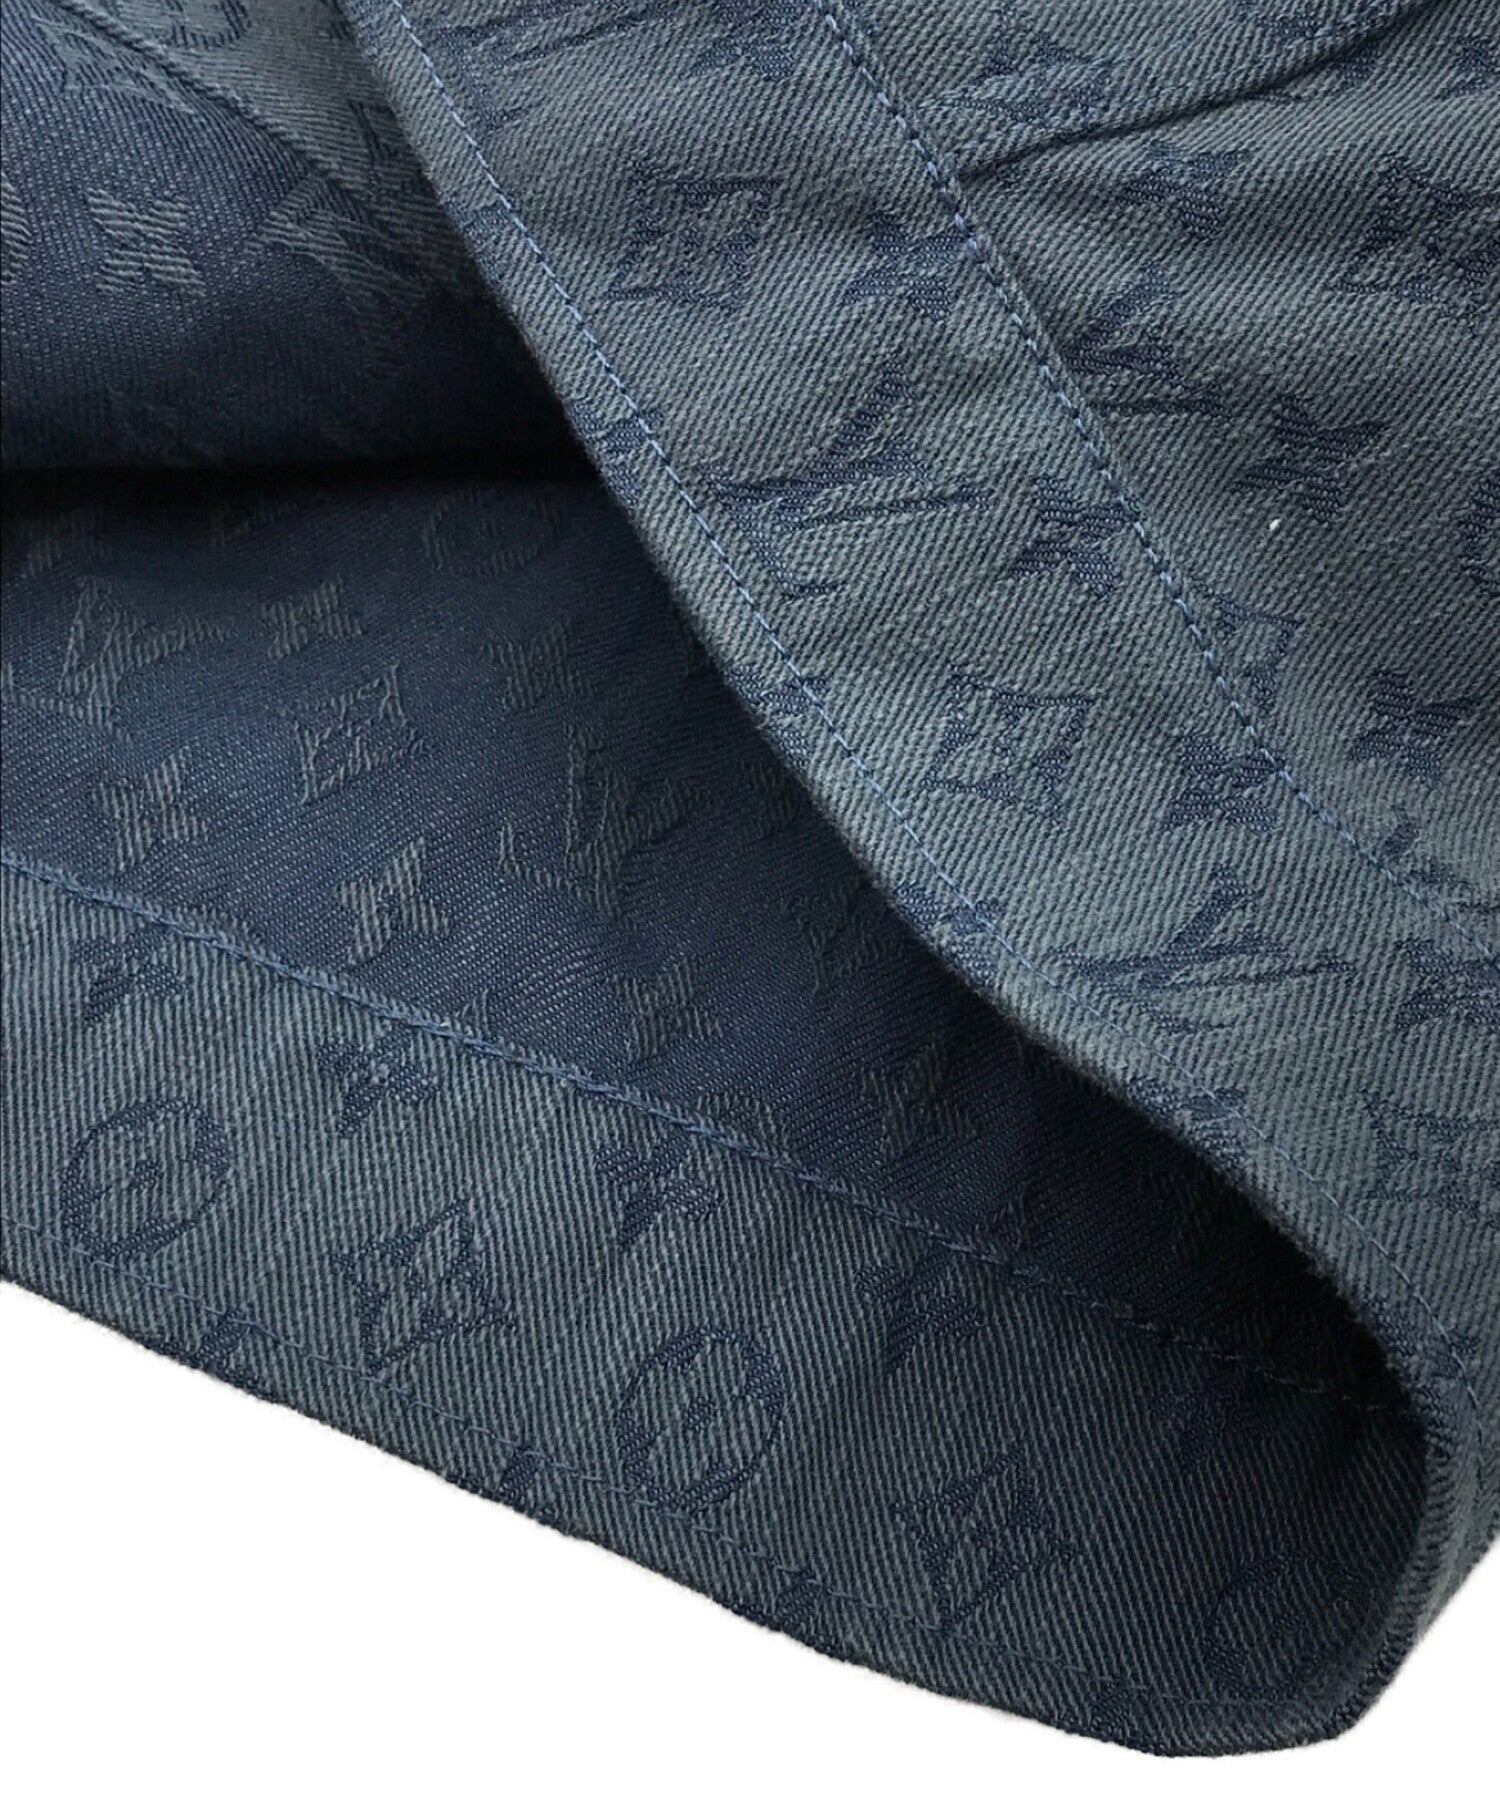 Louis Vuitton Monogram Denim Jacket – THE M VNTG